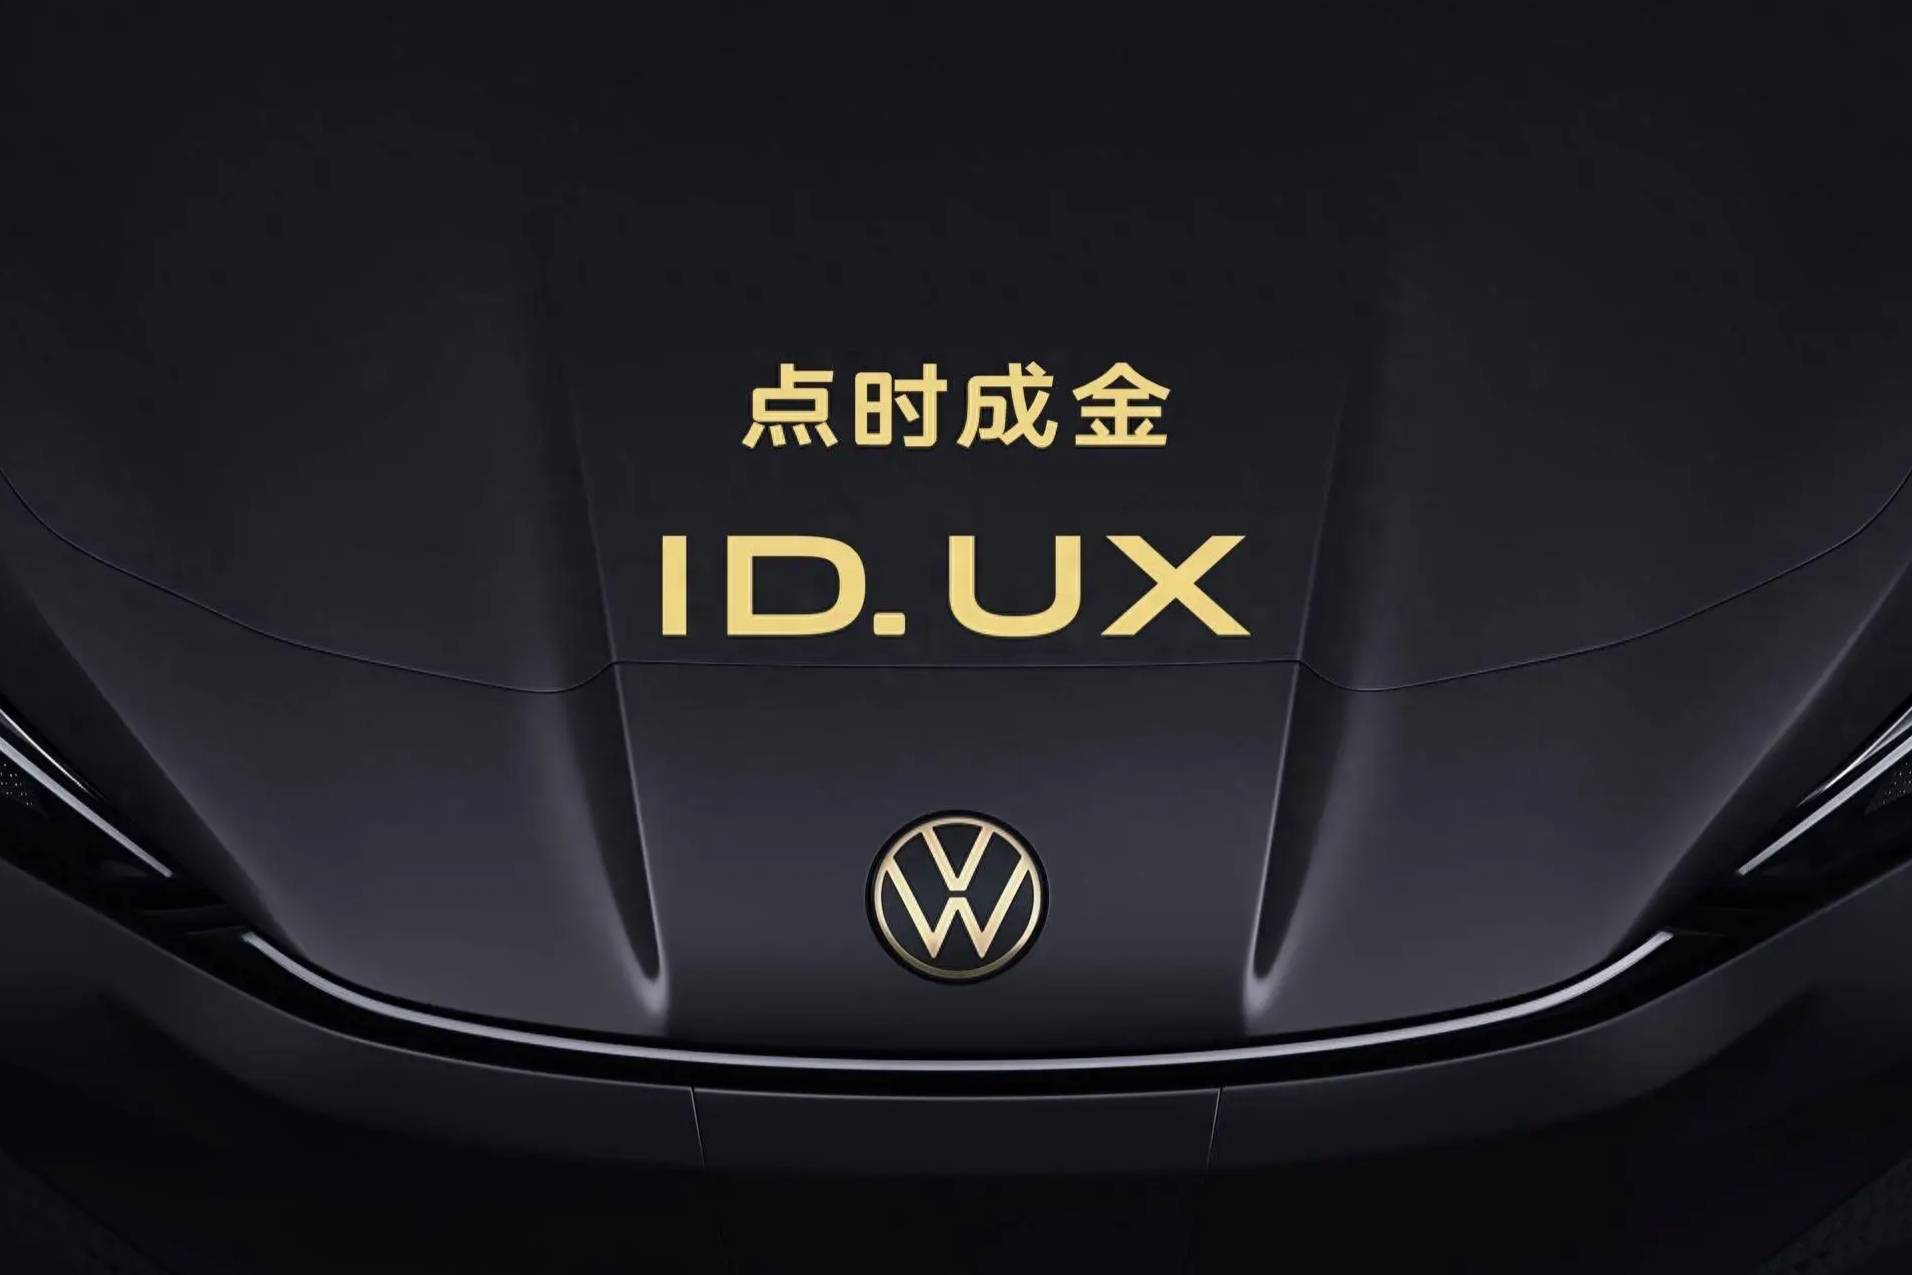 大众汽车品牌揭幕ID. UX： 进一步拓充ID.家族在华阵容